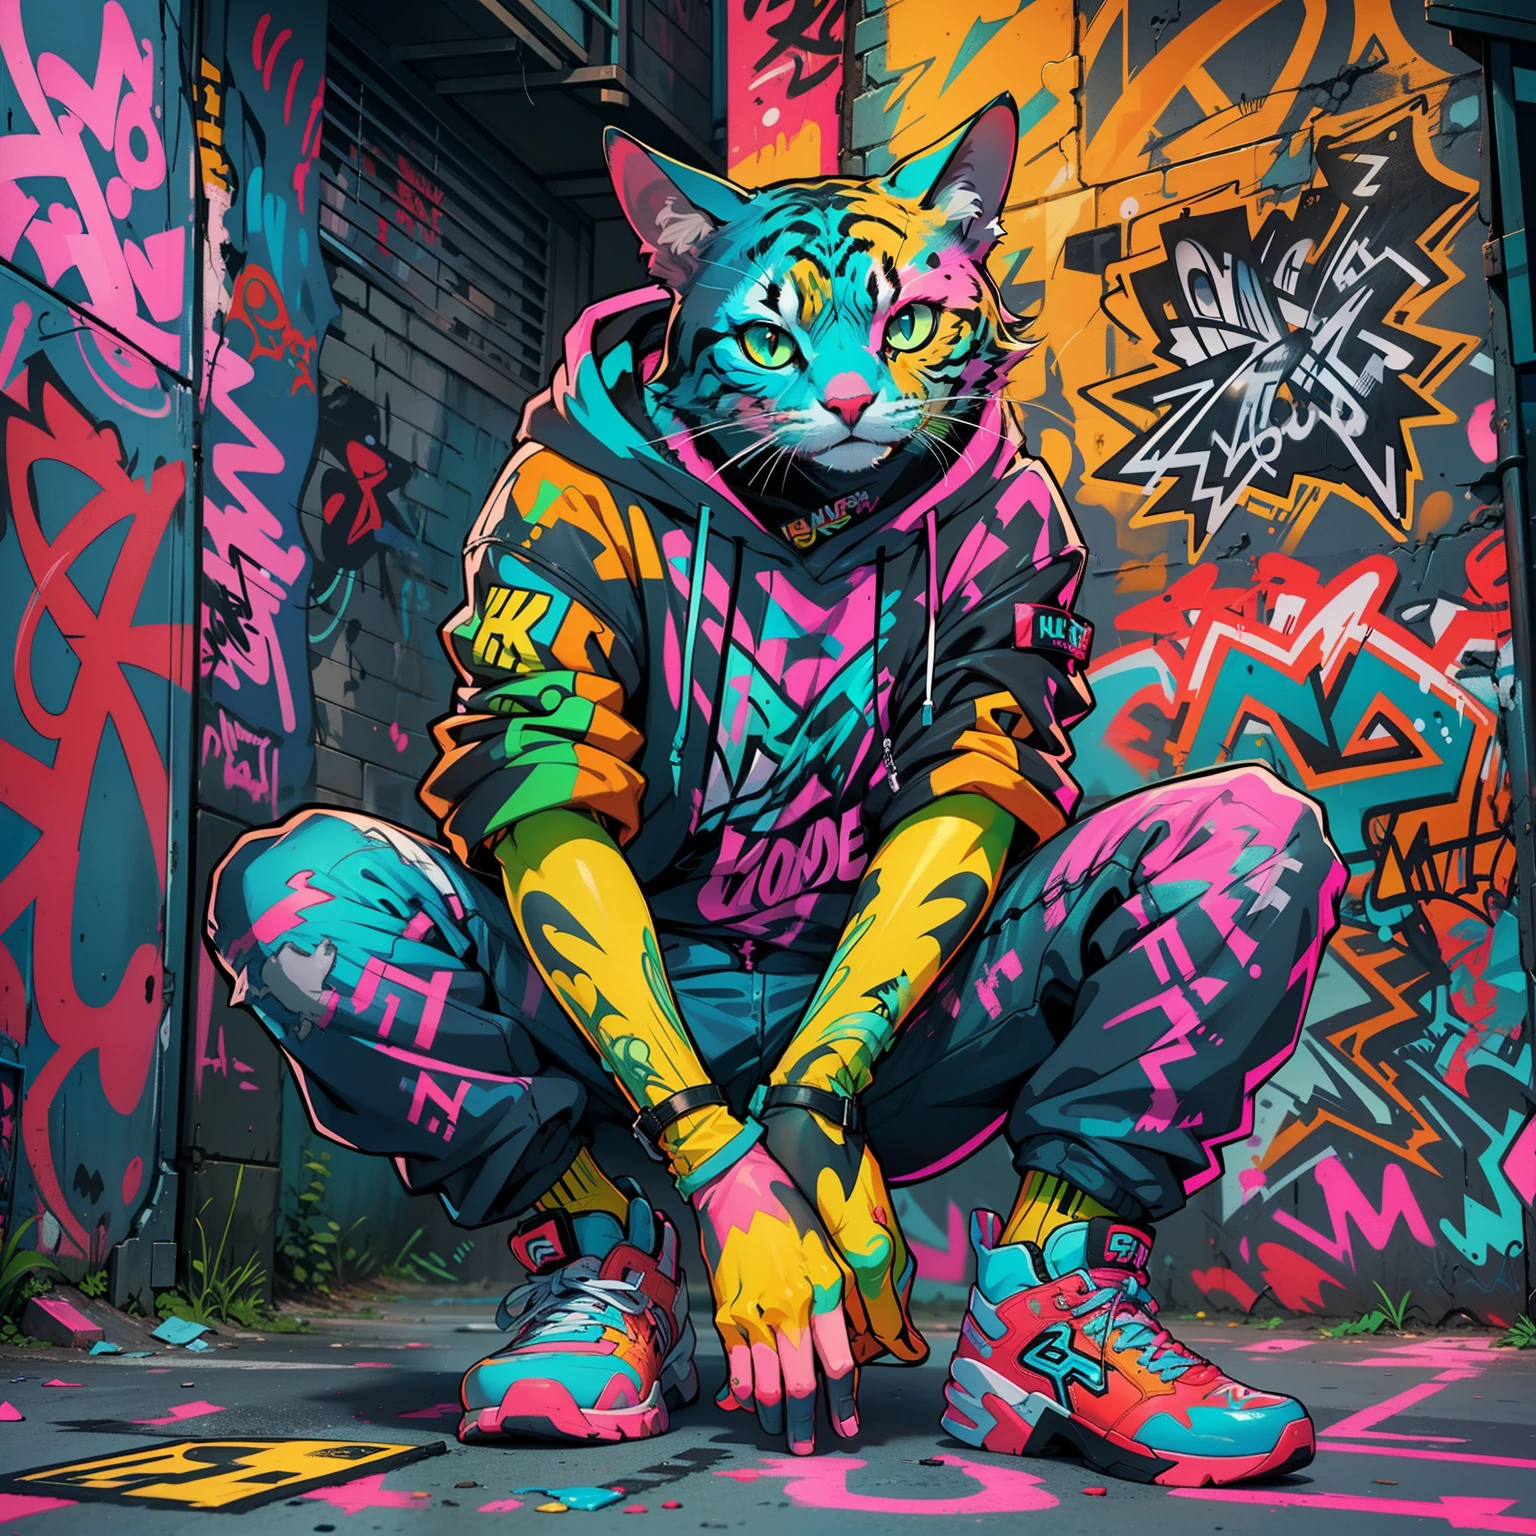 Neonfarbene Katze in Seitengasse、(super detail)、(8K)、((Hip-Hop-Mode))、(Graffiti-Wand)、(Ganzkörper Esbisch)、(hyperdetailliertes Gesicht)、(detaillierte Füße)、(Detaillierte Hand)、(Cooles Gesicht)、(Sitzen mit erhobenen Knien)、(Lege deine Arme auf die Knie)